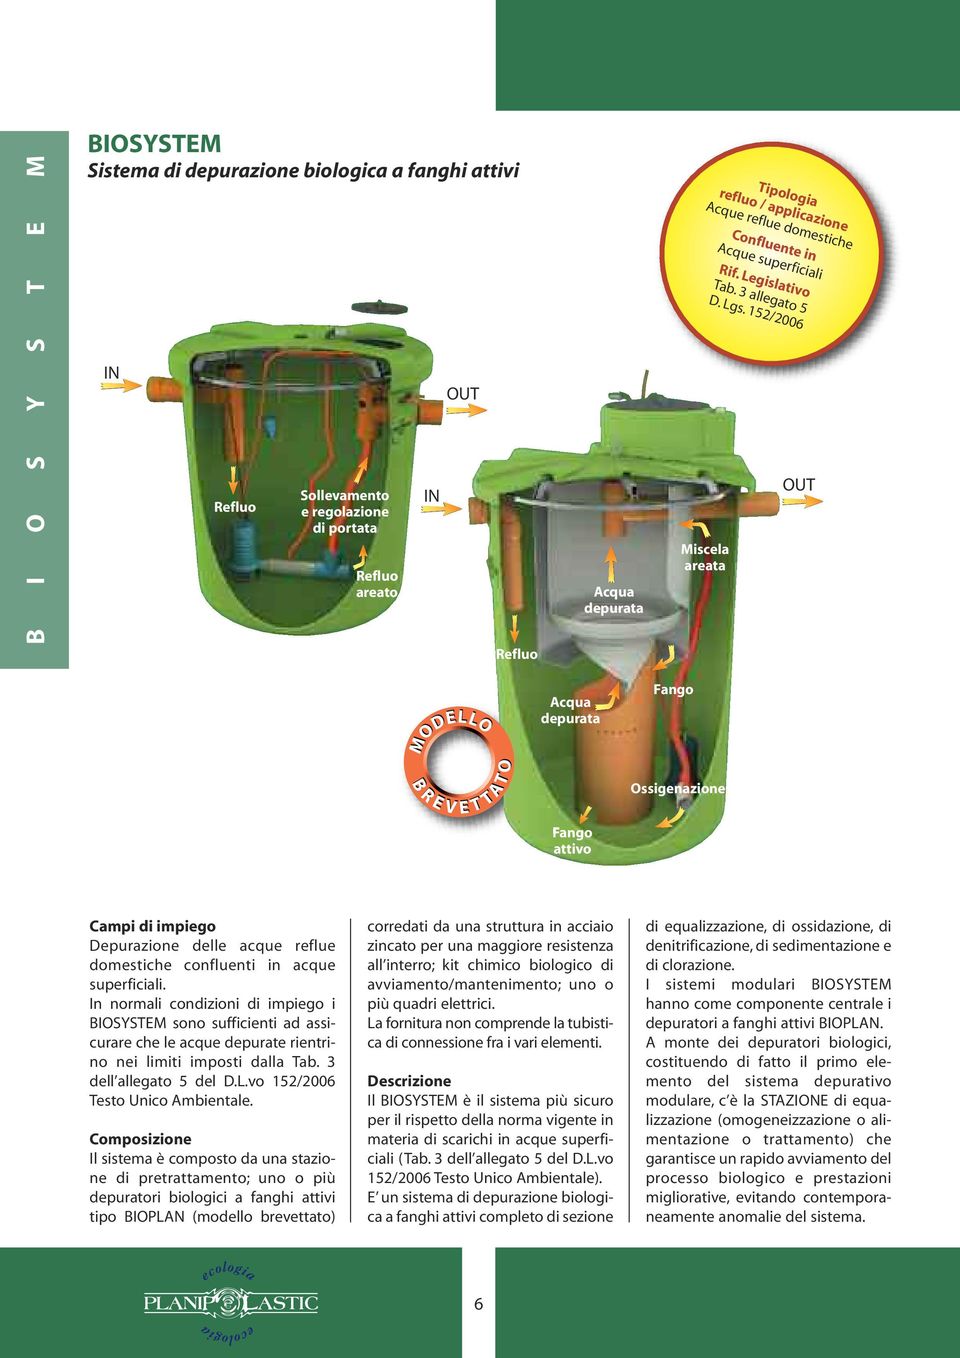 152/2006 Miscela areata Fango Ossigenazione Fango attivo Campi di impiego Depurazione delle acque reflue domestiche confluenti in acque superficiali.